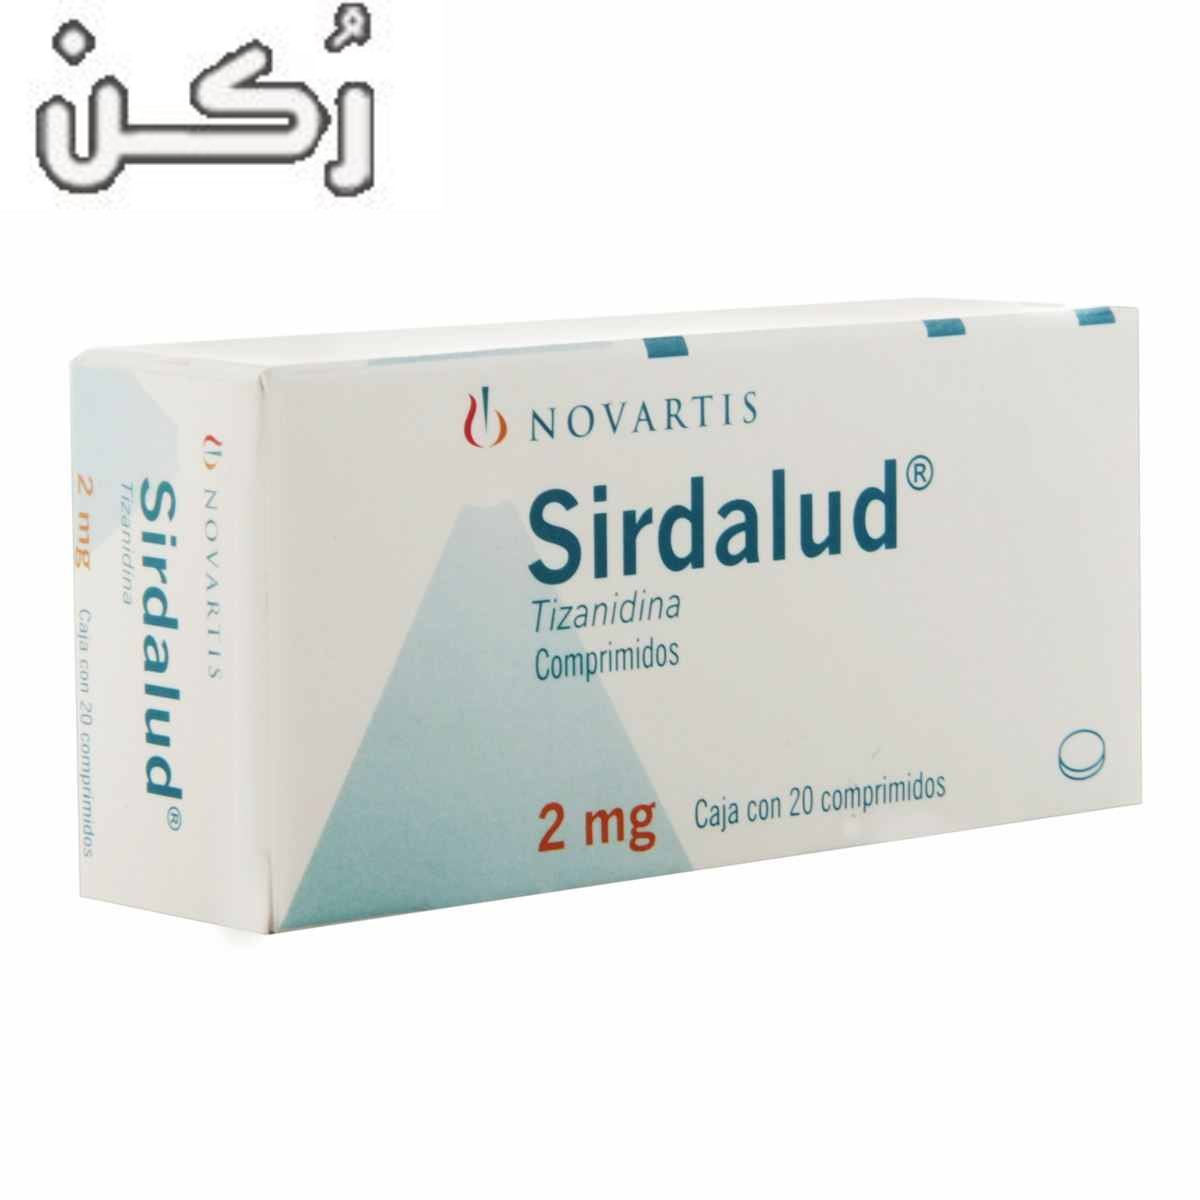 سيردالود Sirdalud لعلاج ألم الأعصاب والتشنج العضلي